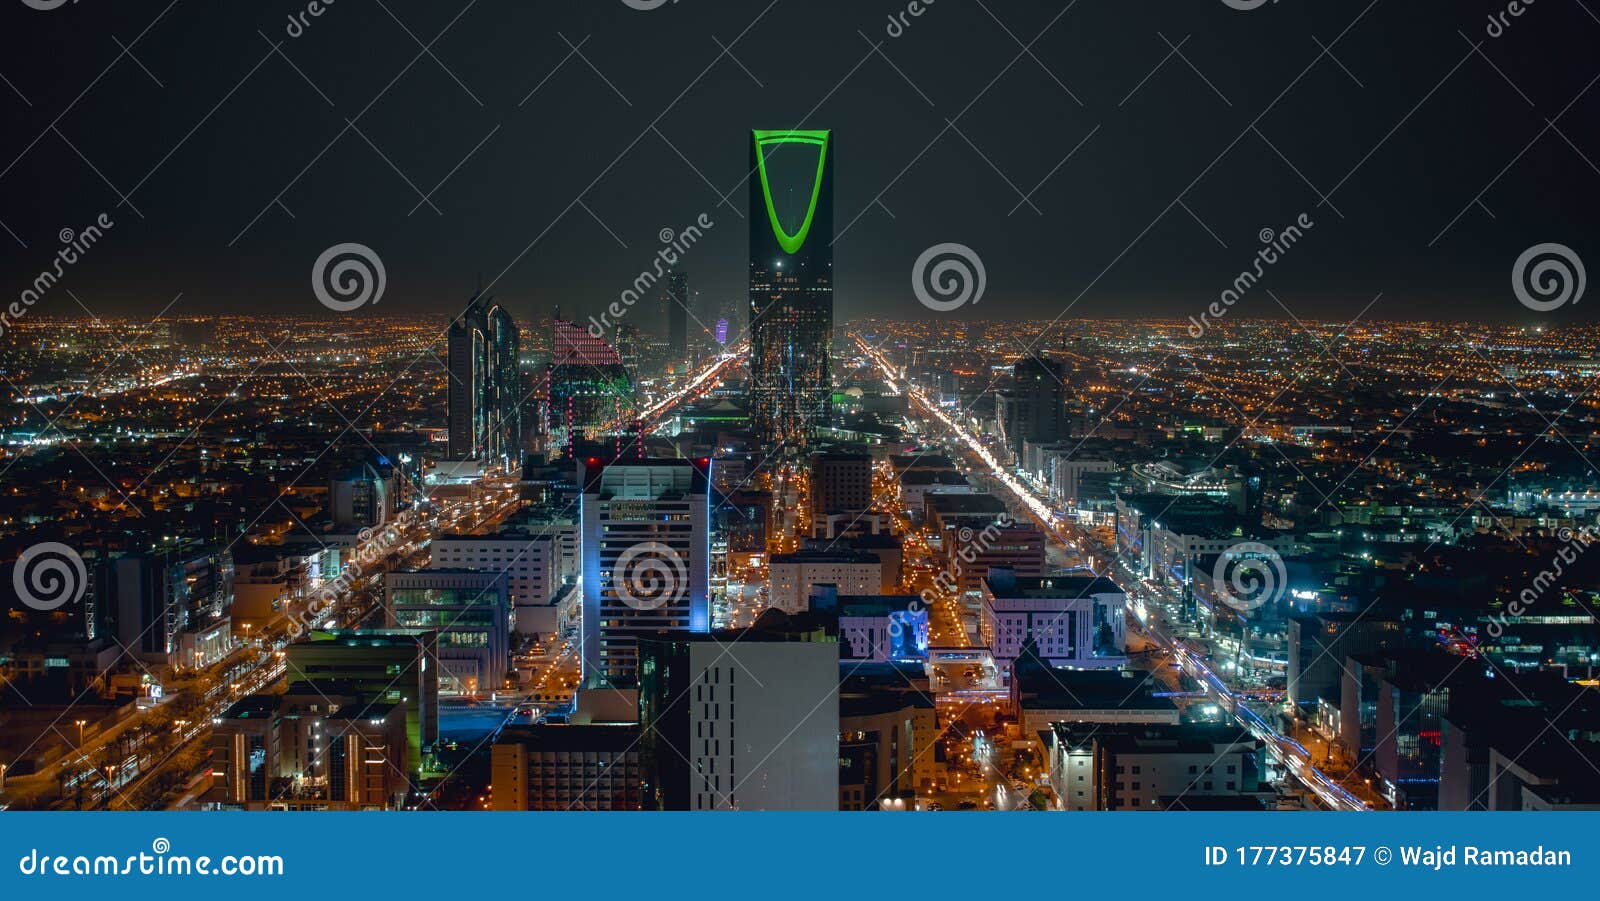 saudi arabia riyadh landscape at night - riyadh tower kingdom centre - kingdom tower Ã¢â¬â riyadh skyline - burj al-mamlaka Ã¢â¬â